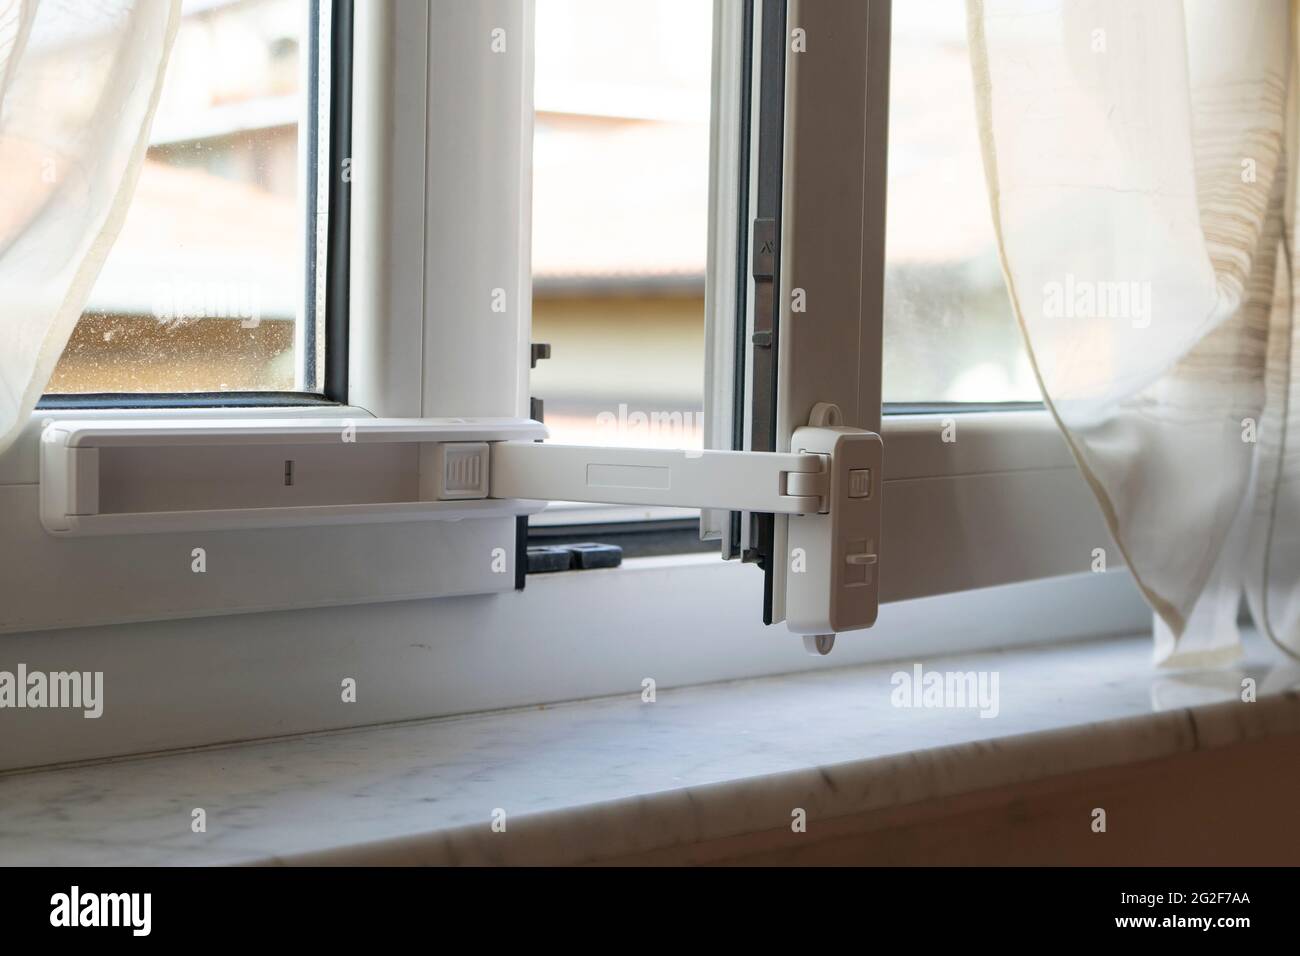 Kinderfensterschutzschloss. Kabelschutzgitter verhindern das Öffnen des  Fensters durch Kinder. Vermeidung von Sturzunfällen Stockfotografie - Alamy